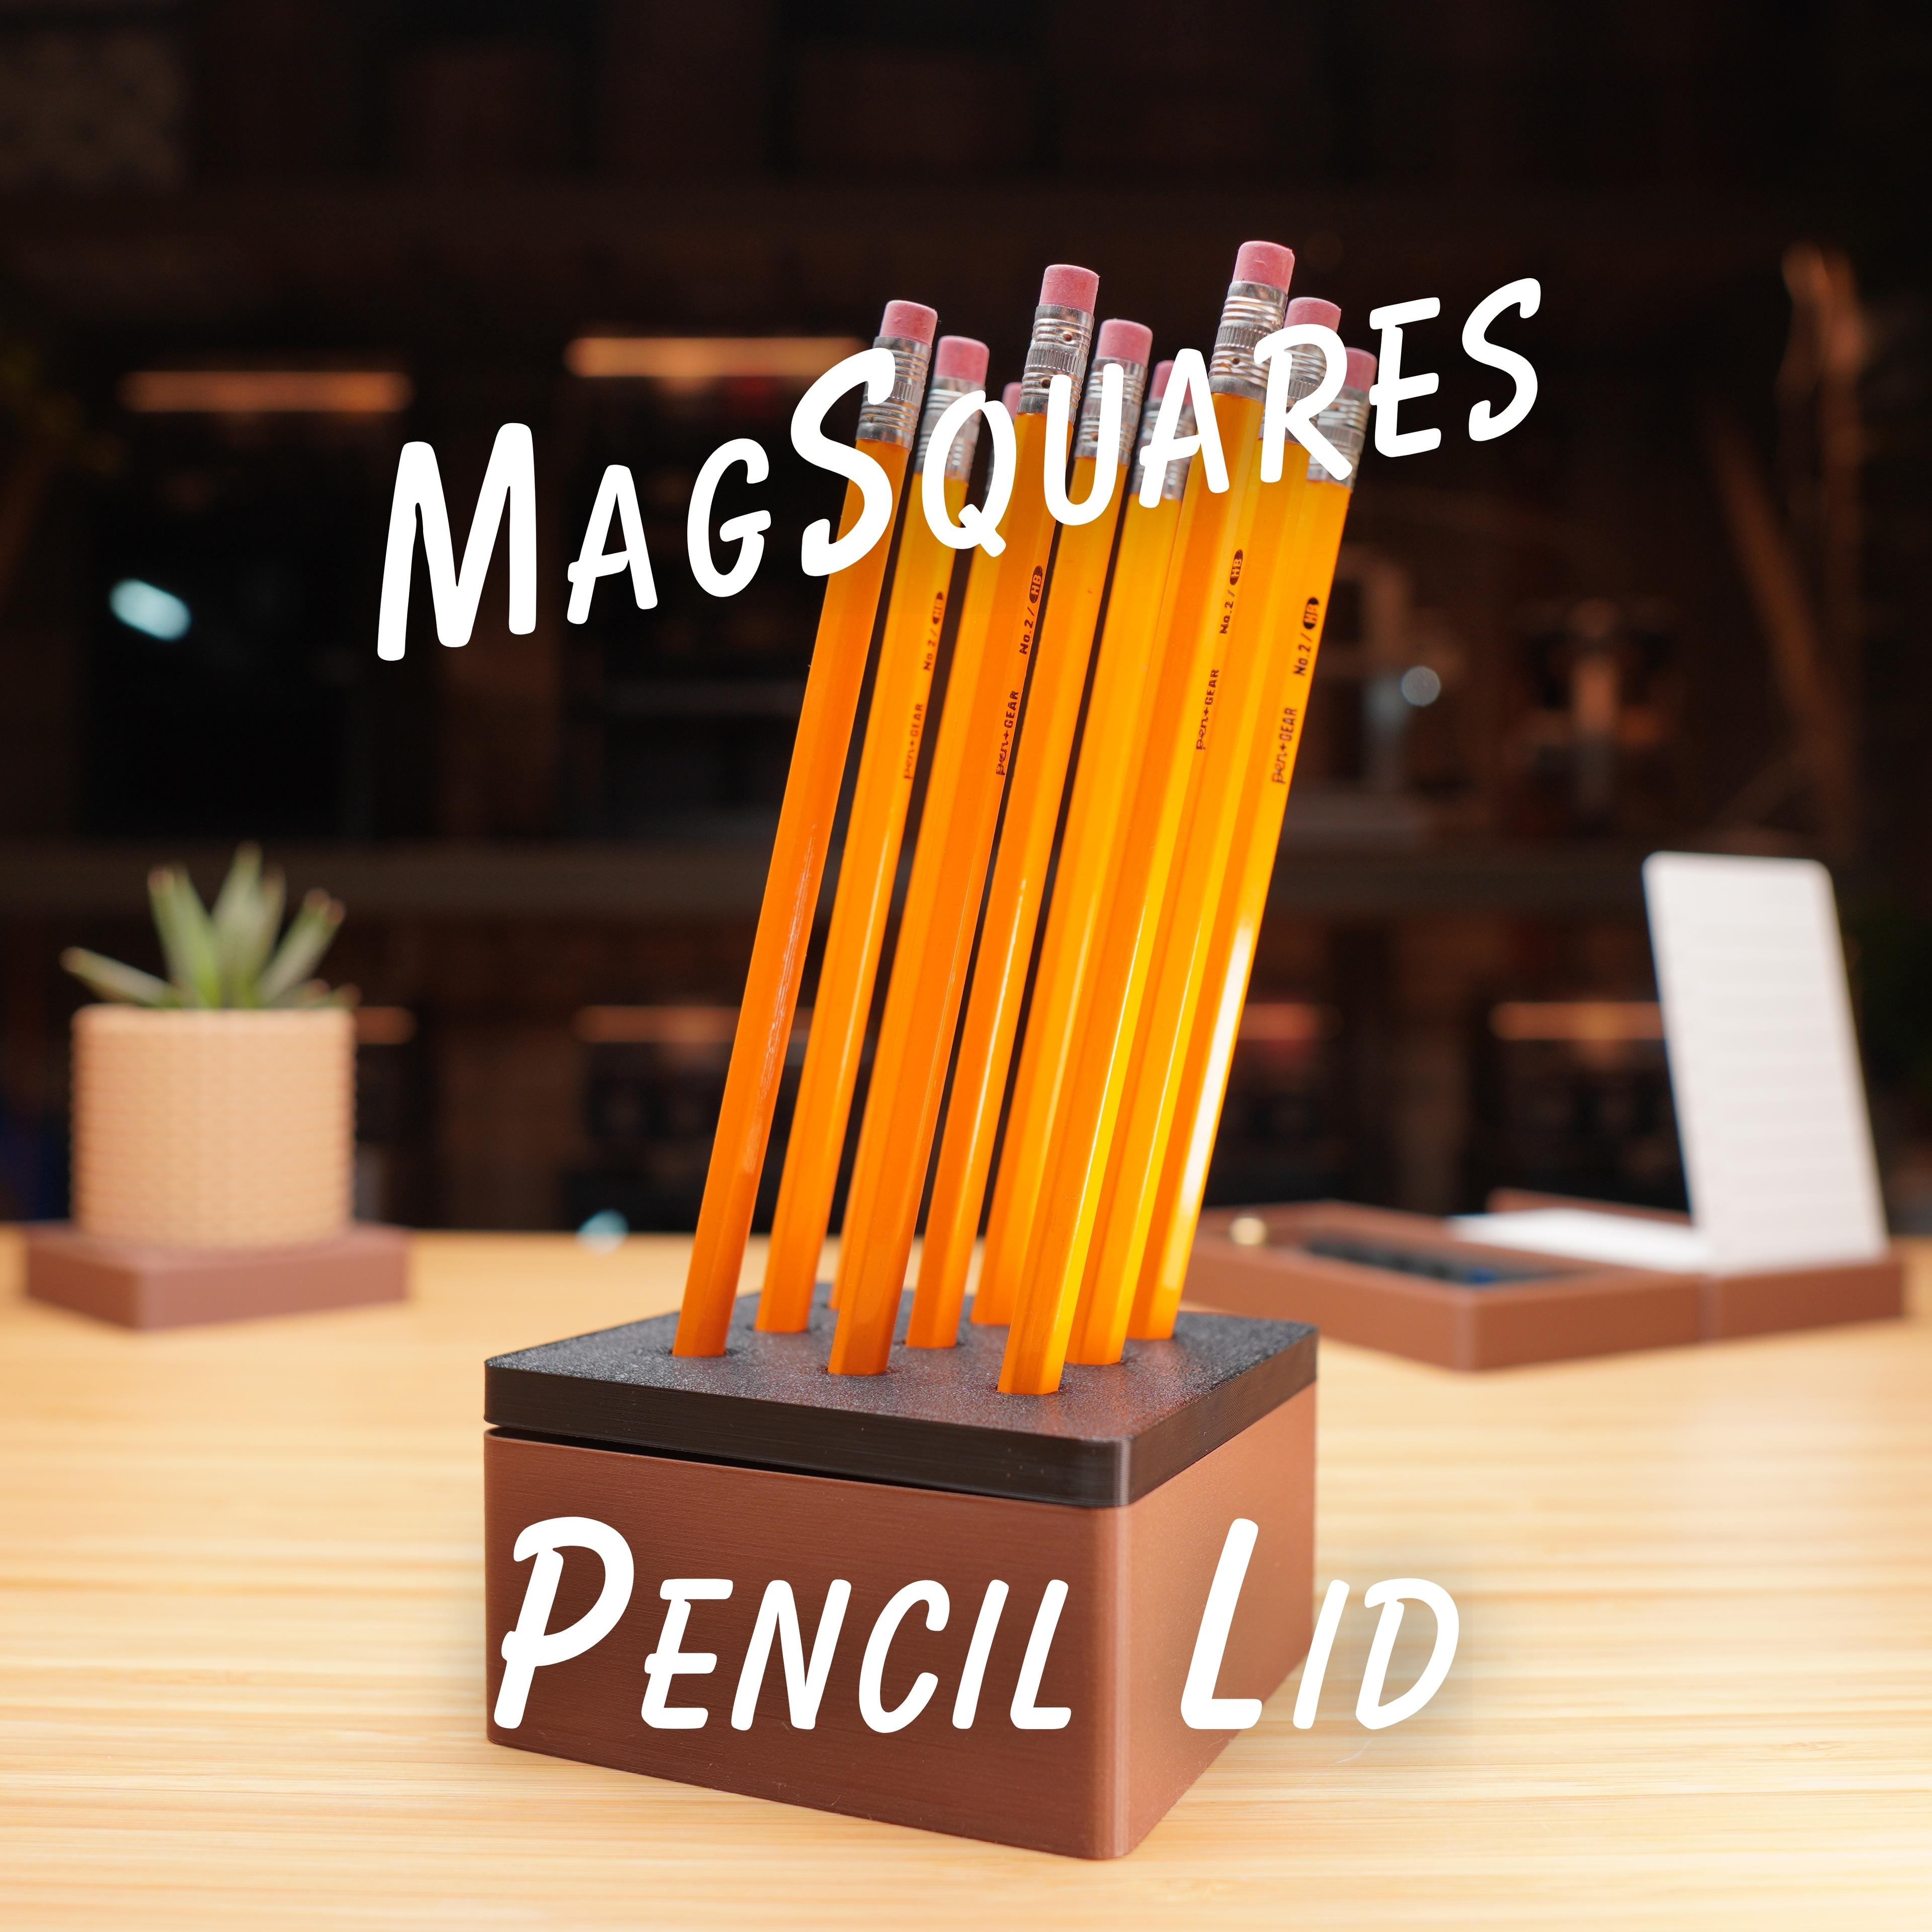 1x1 Pencil Lid - MagSquares 3d model